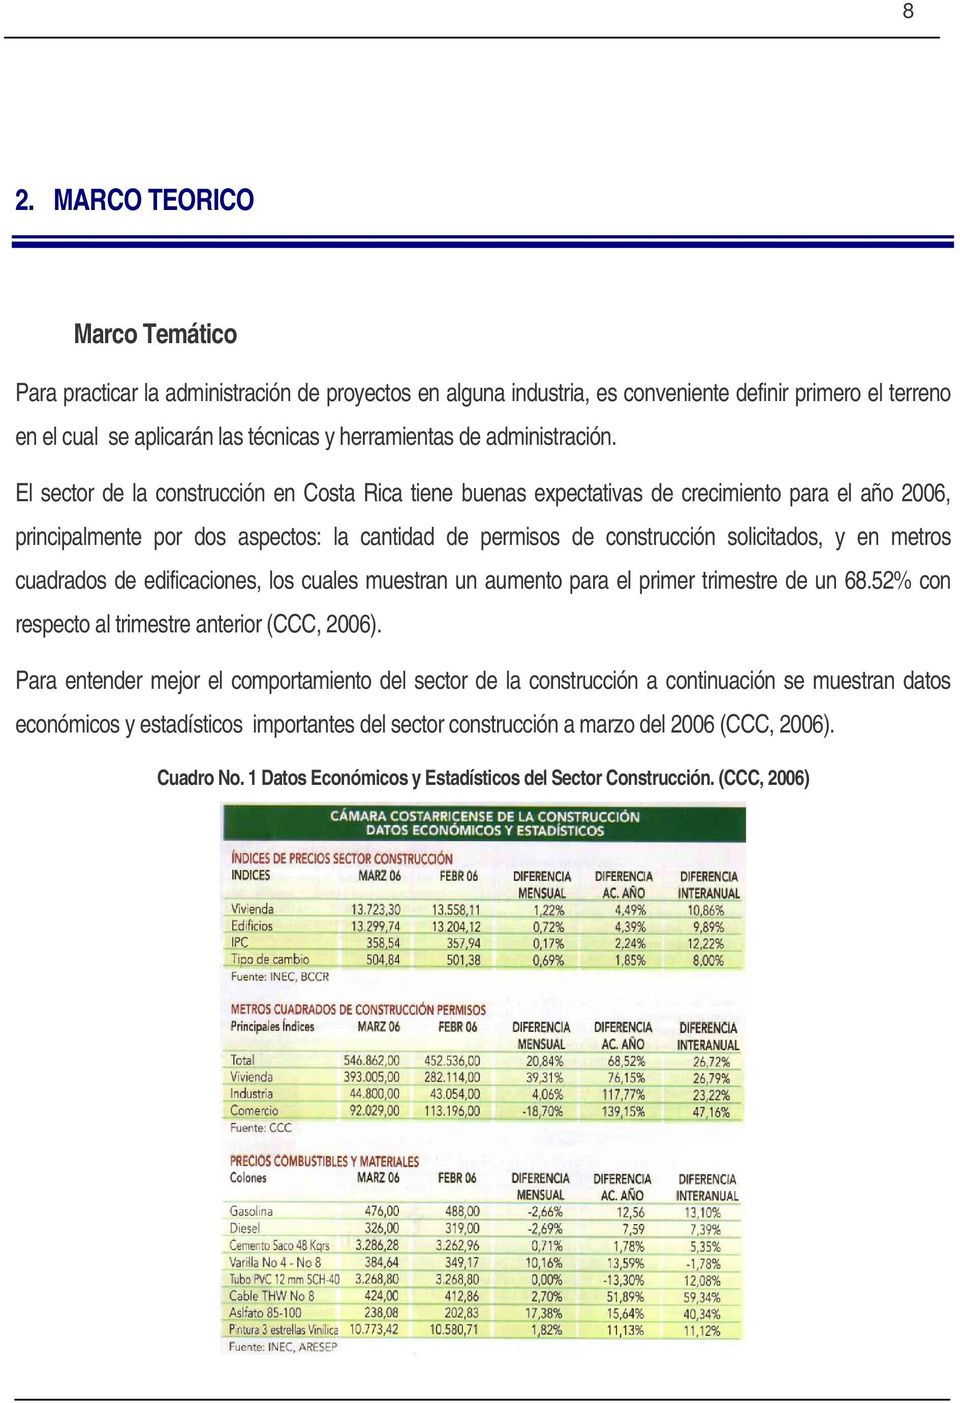 El sector de la construcción en Costa Rica tiene buenas expectativas de crecimiento para el año 2006, principalmente por dos aspectos: la cantidad de permisos de construcción solicitados, y en metros